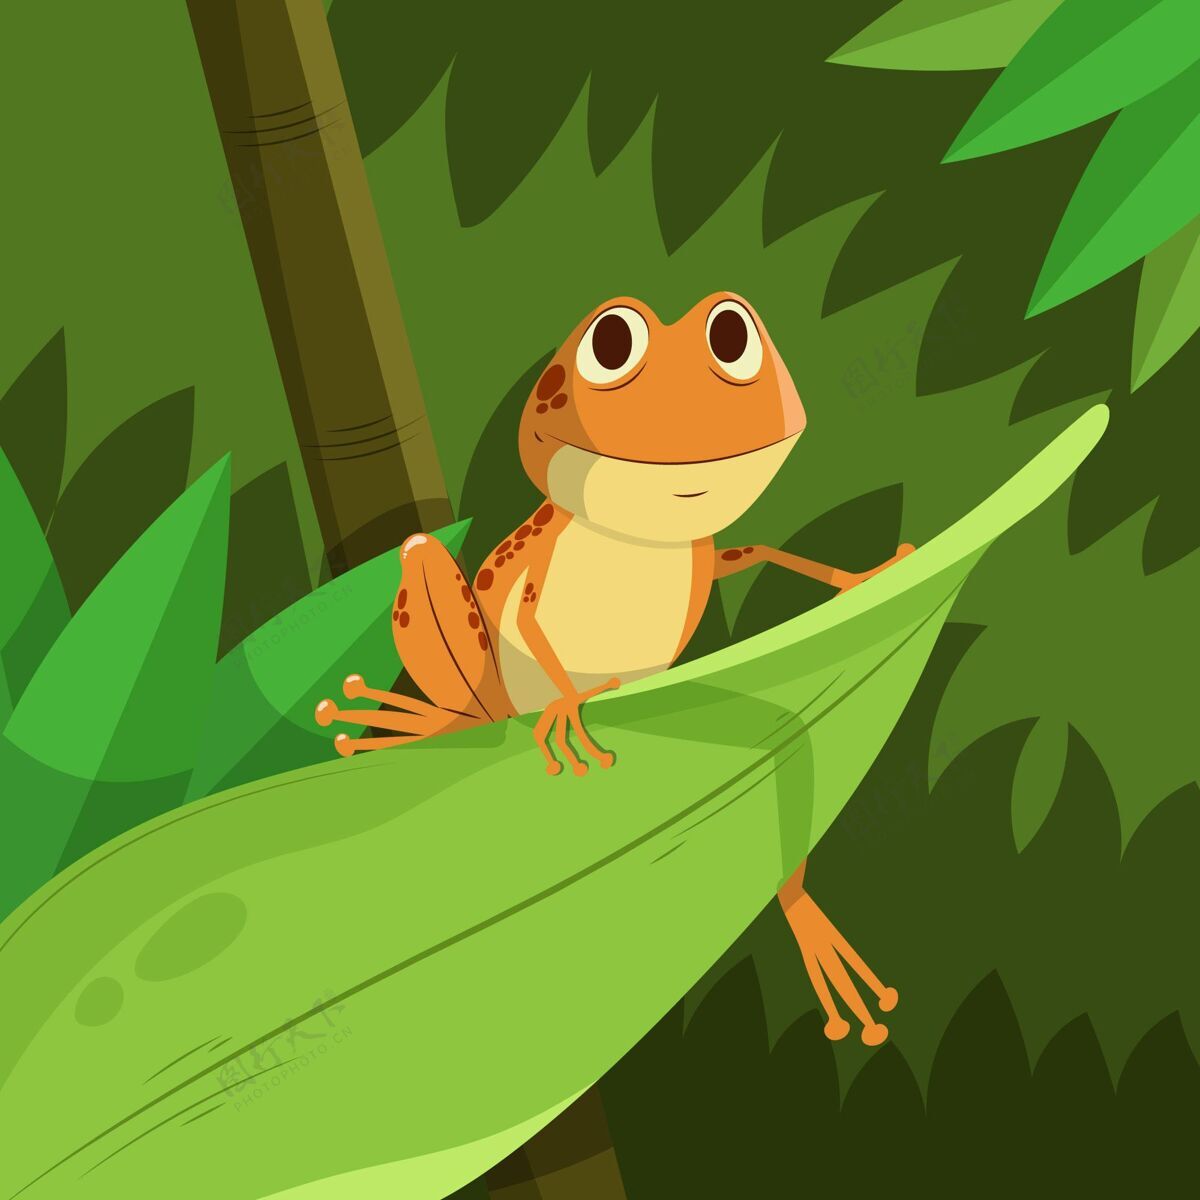 小平面设计笑脸青蛙着色自然笑脸野生动物